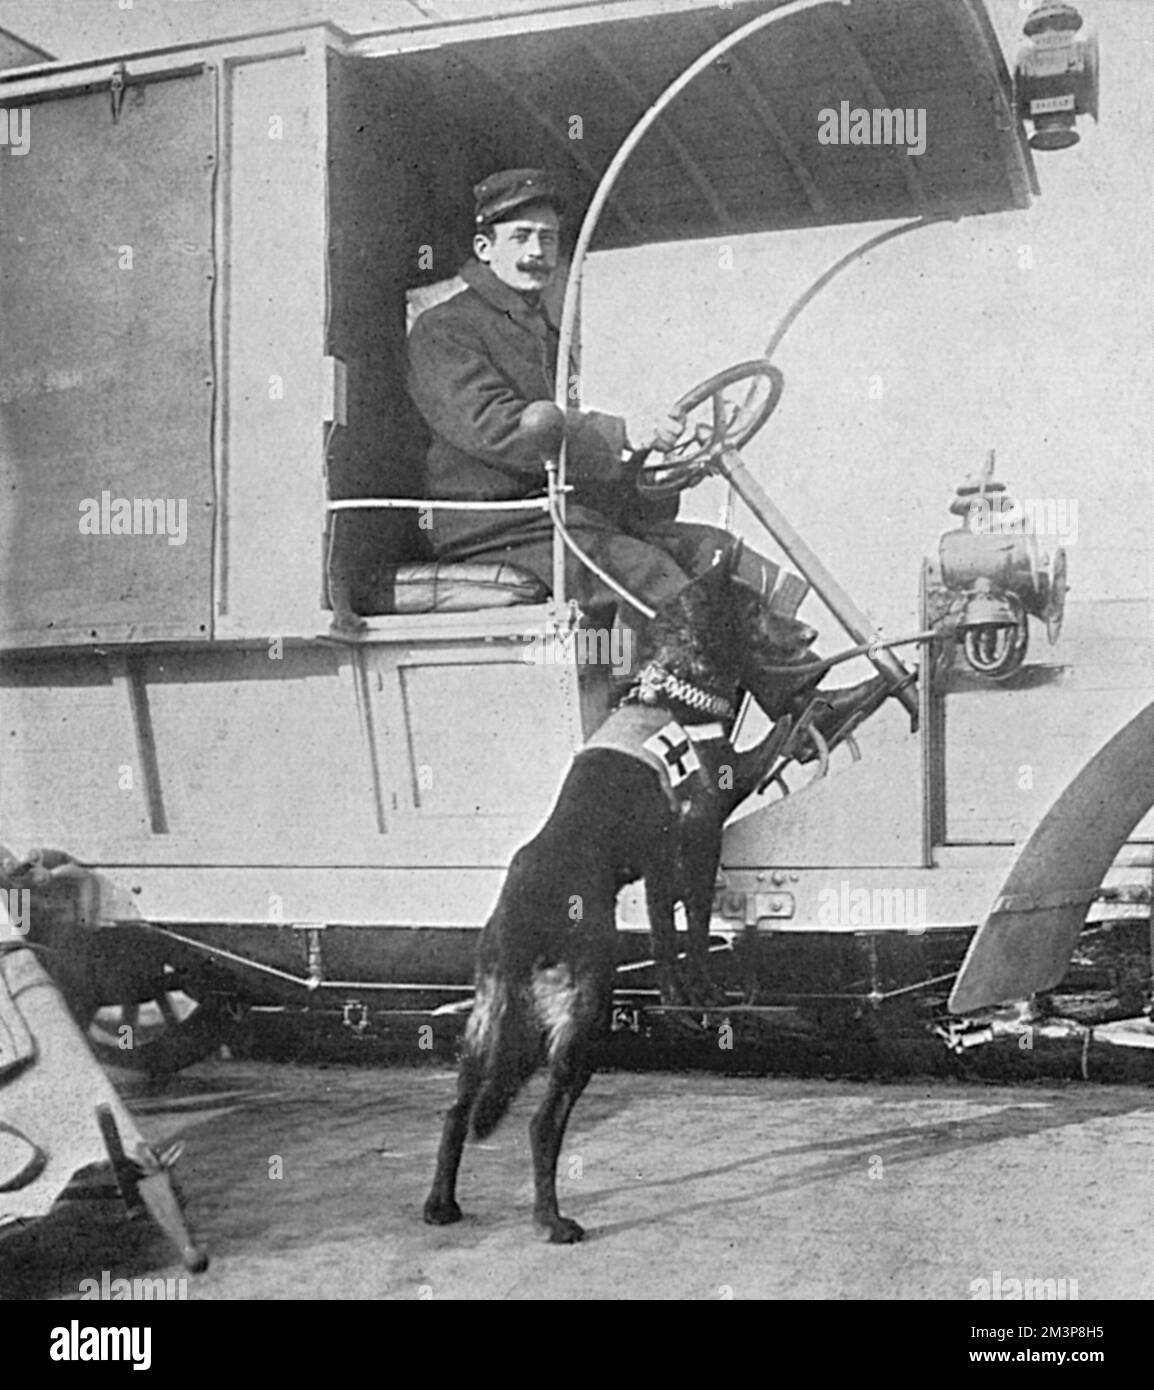 Ein Hundearbeiter vom Roten Kreuz, der im Ersten Weltkrieg an einen französischen Krankenwagen angeschlossen war Ausgebildete Hunde wurden nicht nur zur Jagd auf Verwundete in abgelegenen Teilen des Schlachtfeldes eingesetzt, sondern auch, um in die feurige Zone der Schlacht zu gelangen. Jeder langweilte sich mit einem Genfer roten Kreuz und trug auf seiner Brust einen kleinen Koffer mit Aufputschmitteln und erste-Hilfe-Ausrüstung. Datum: 1914 Stockfoto